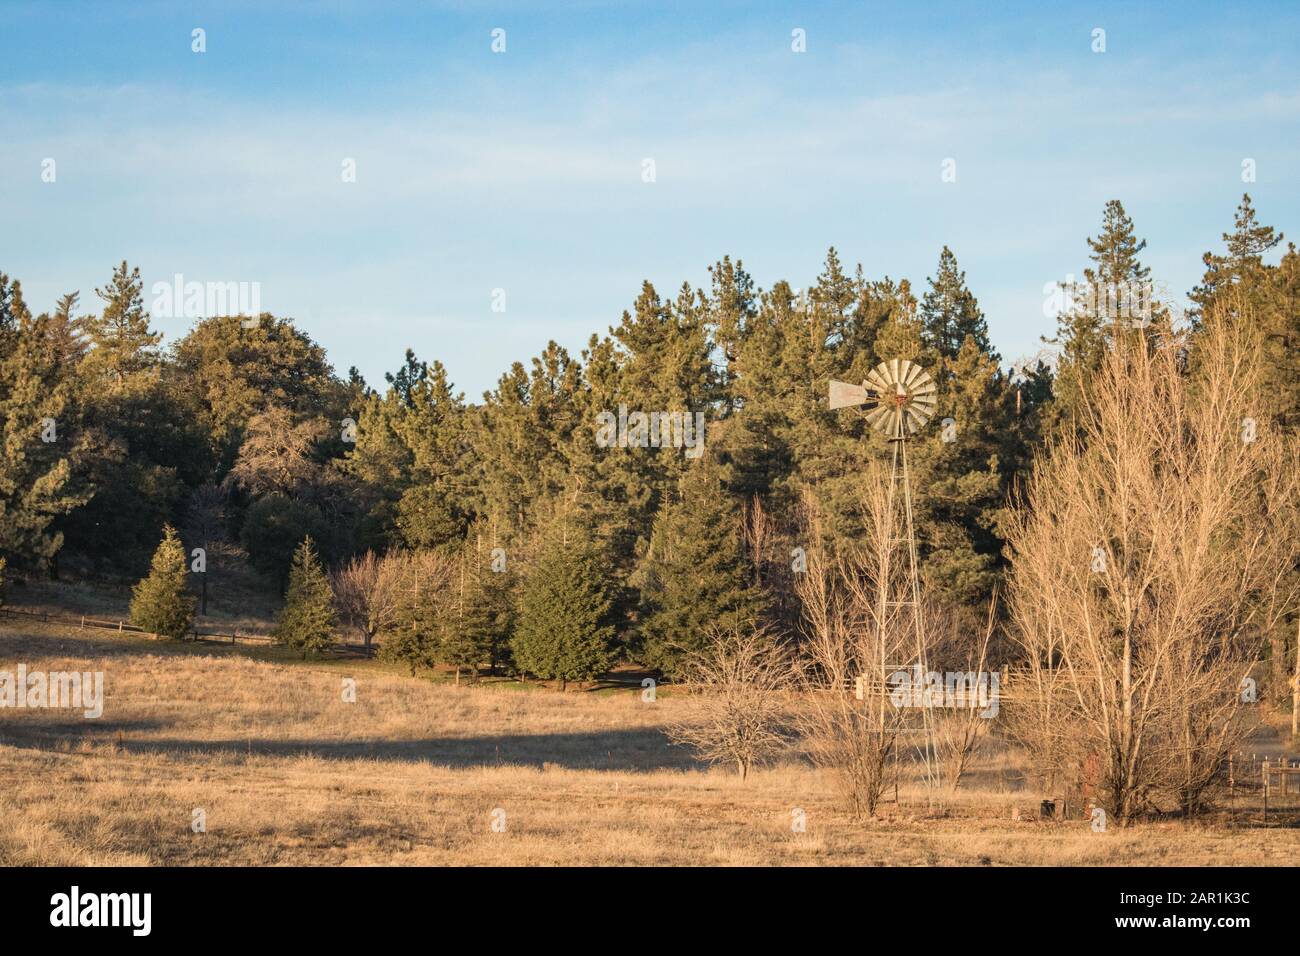 Autum American Western Rural Ranch Landschaft mit hoher alter alter rustikaler Retro-Windmühle in einem gemähten Feld und grünen Eichen- und Zypressenbäumen in t Stockfoto